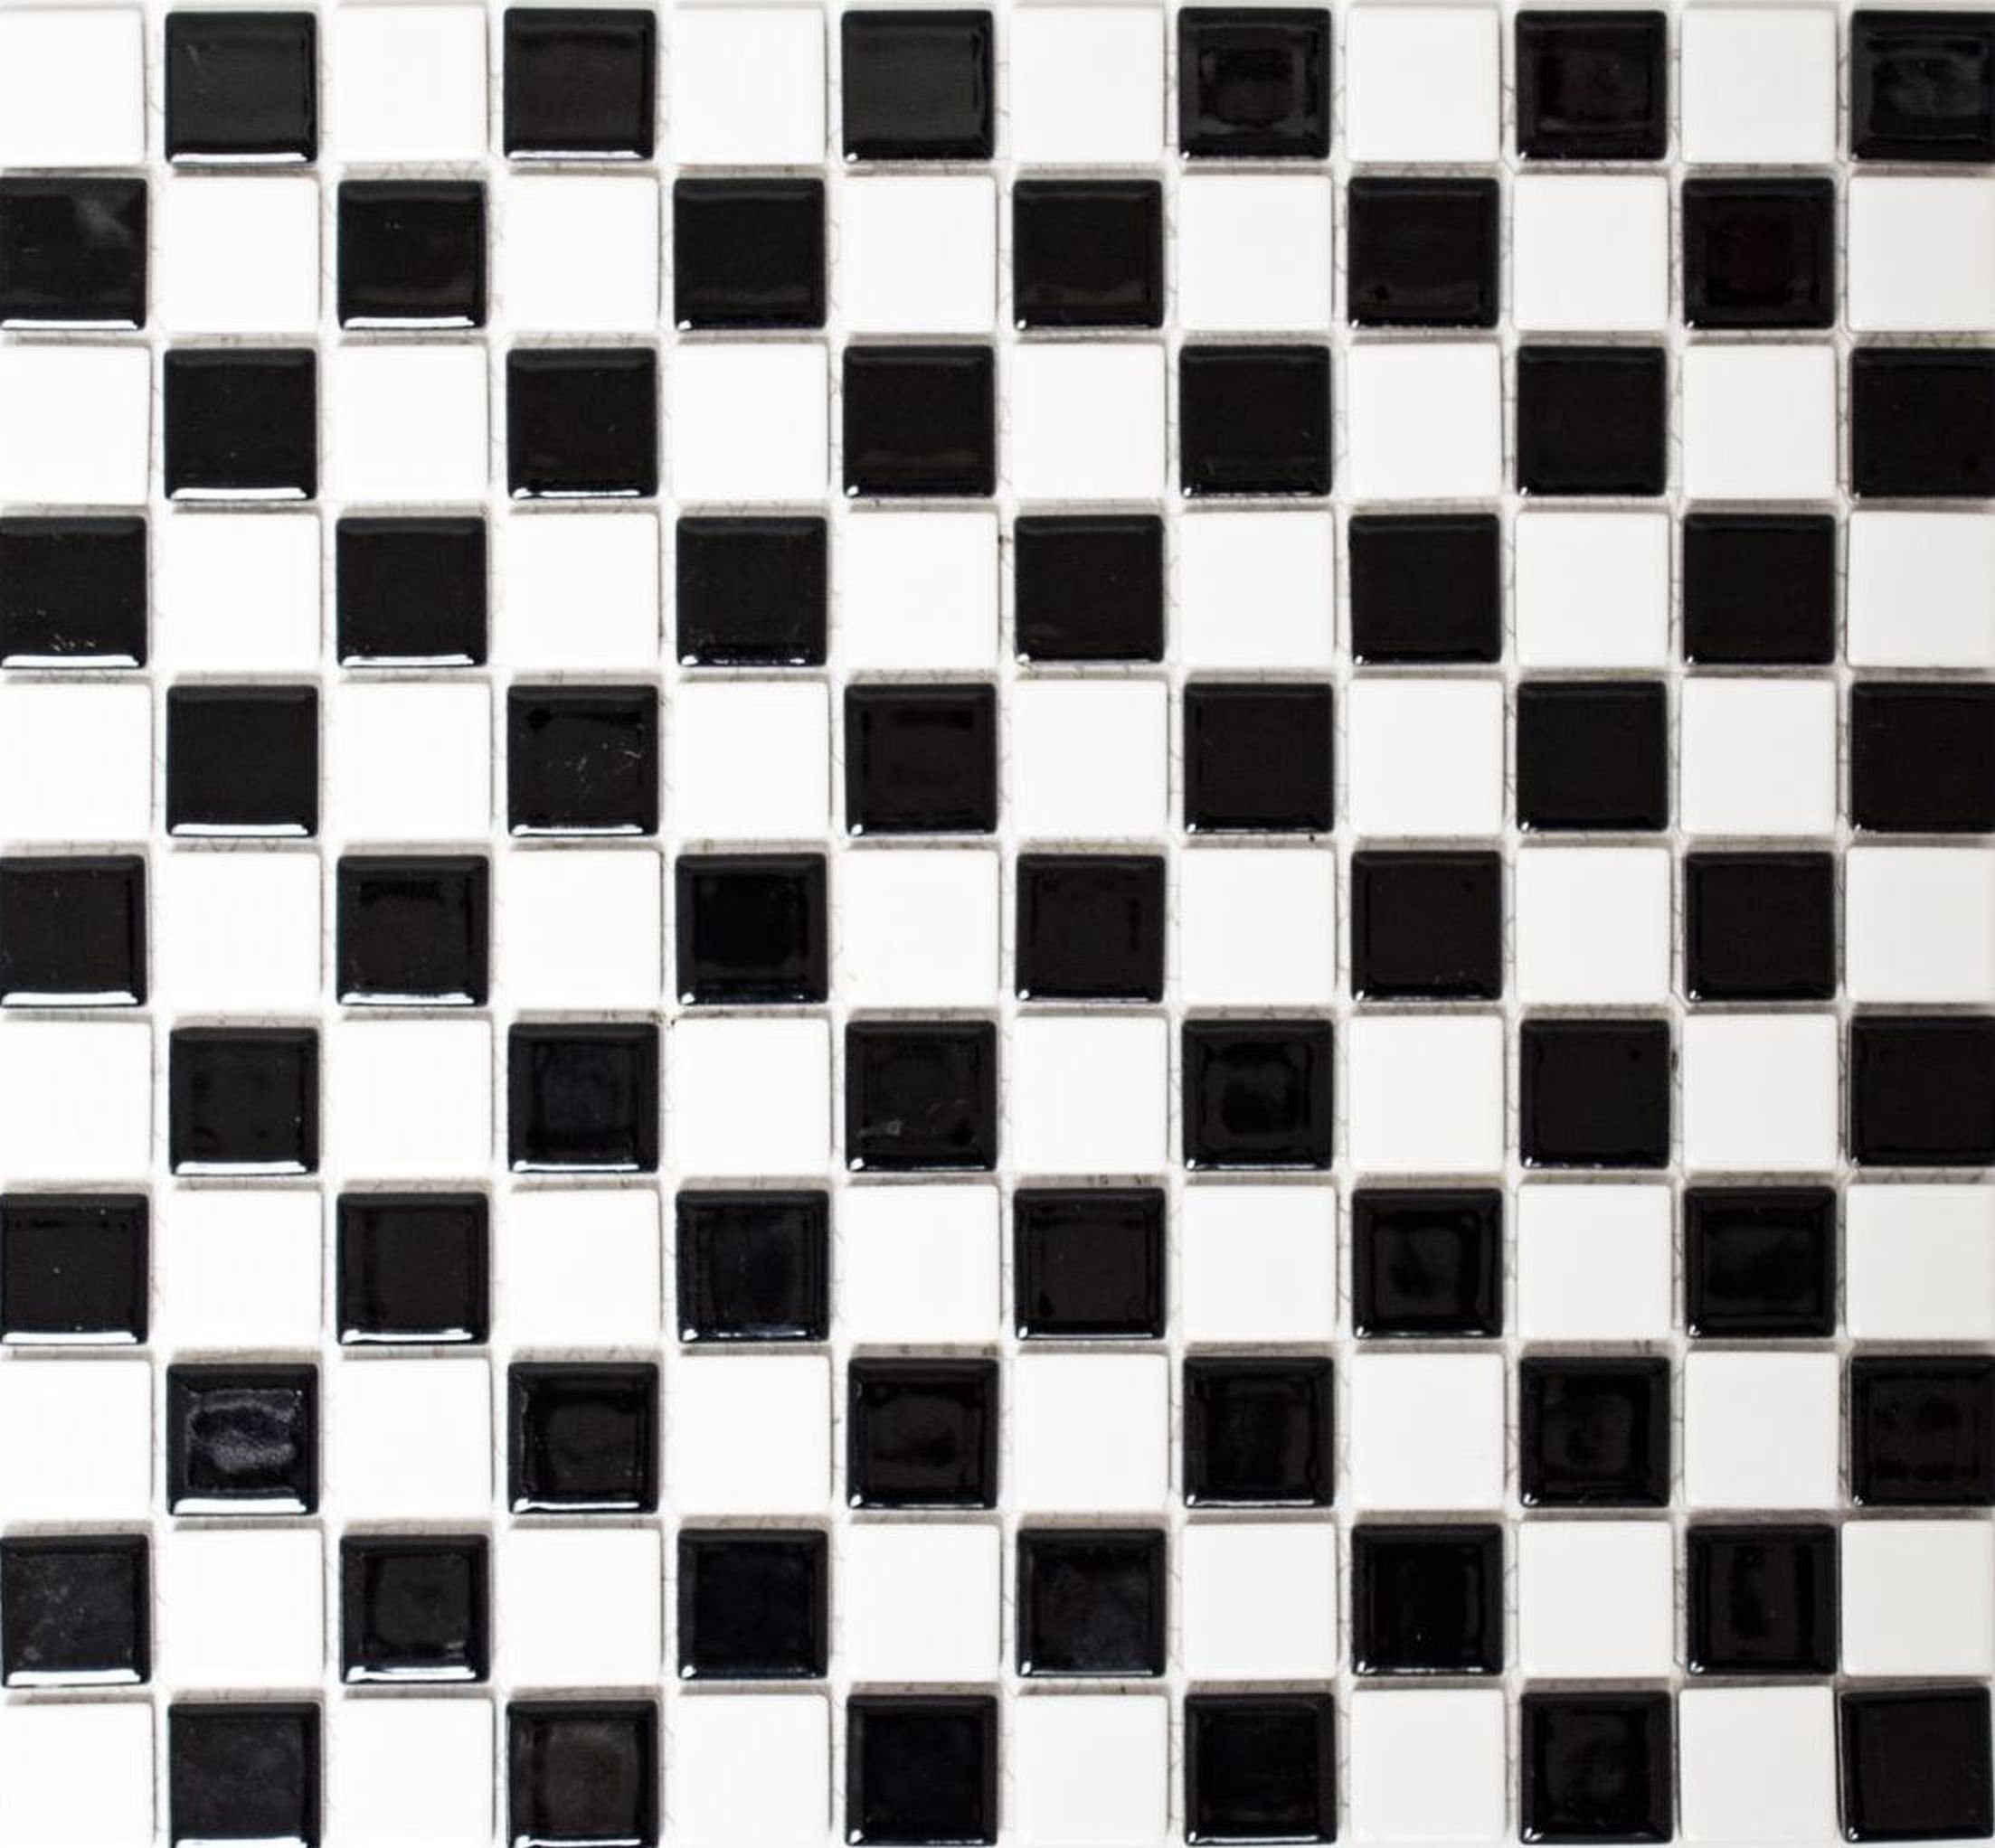 Mosani Mosaikfliesen Keramik Mosaik Schachbrett schwarz weiß glänzend Mosaikfliese